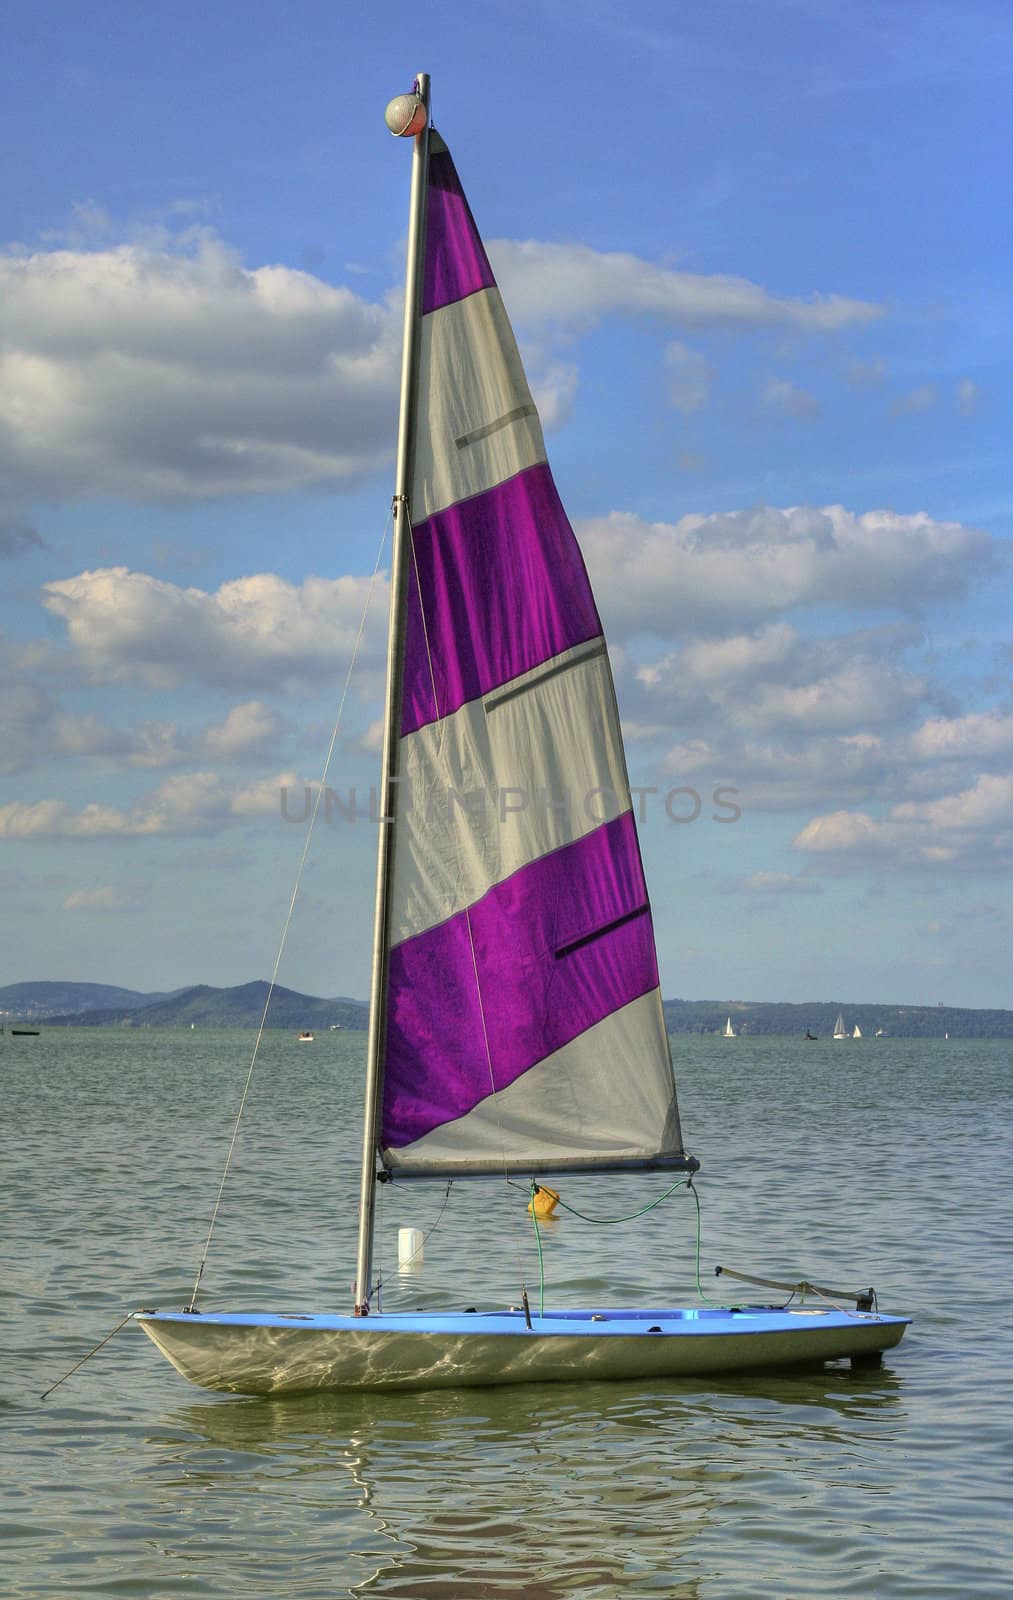 A sailboat on Balaton.